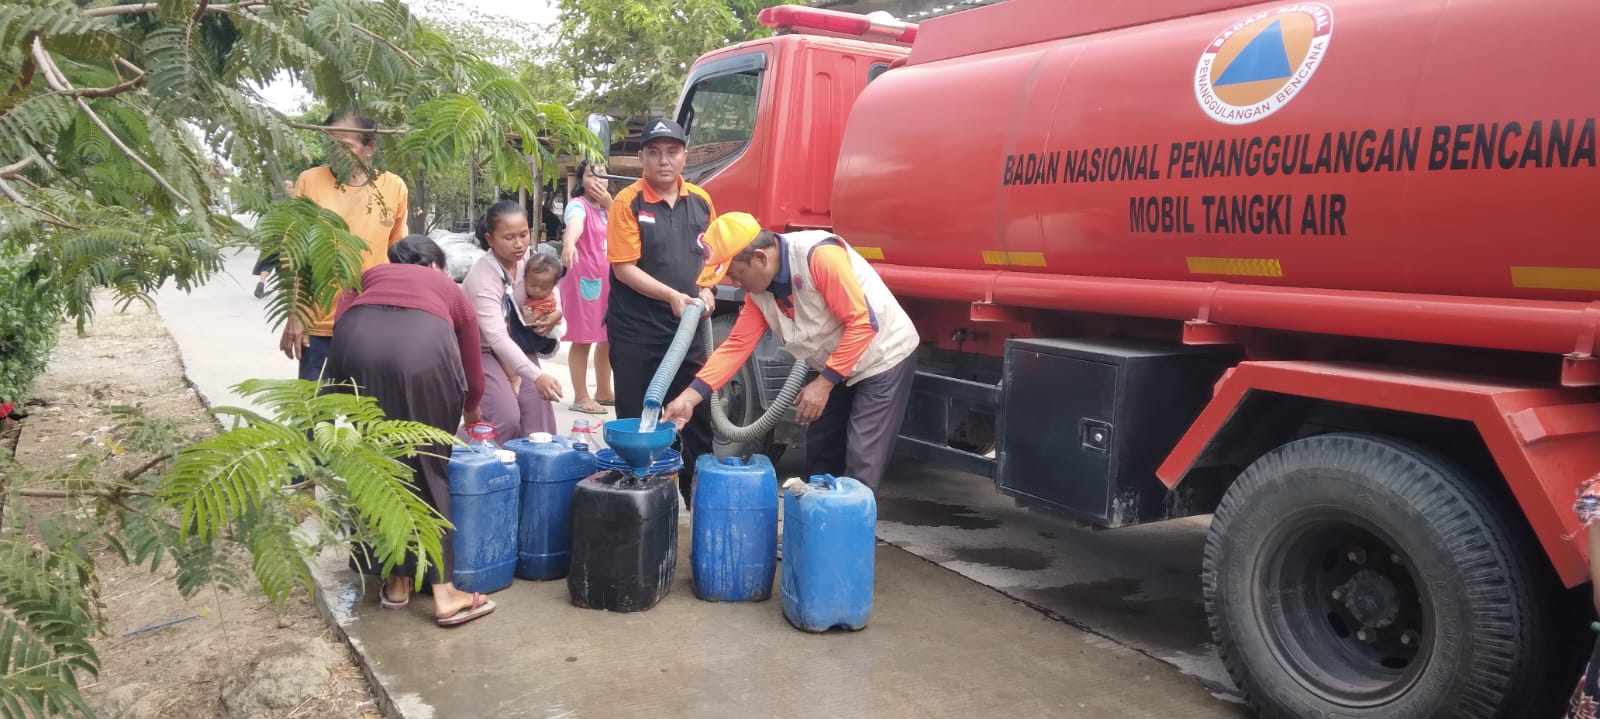 Droping bantuan air bersih ke Kecamatan Jaken (Istimewa/Samin News)